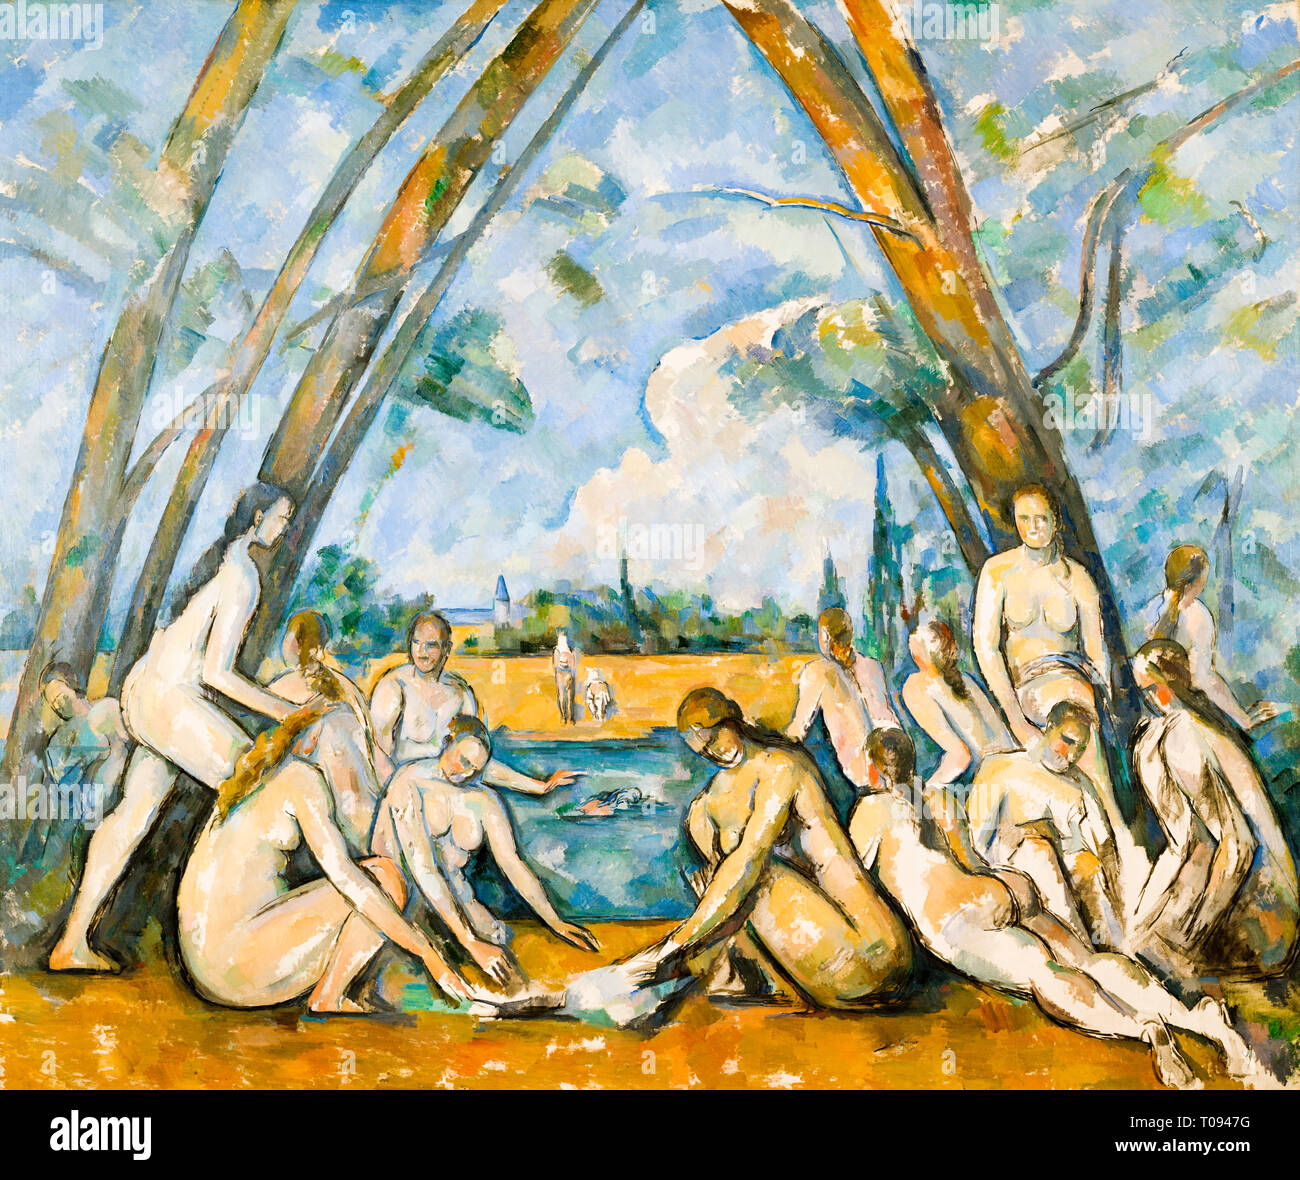 Paul Cézanne, les grands baigneurs, peinture post-impressionniste, 1906 Banque D'Images